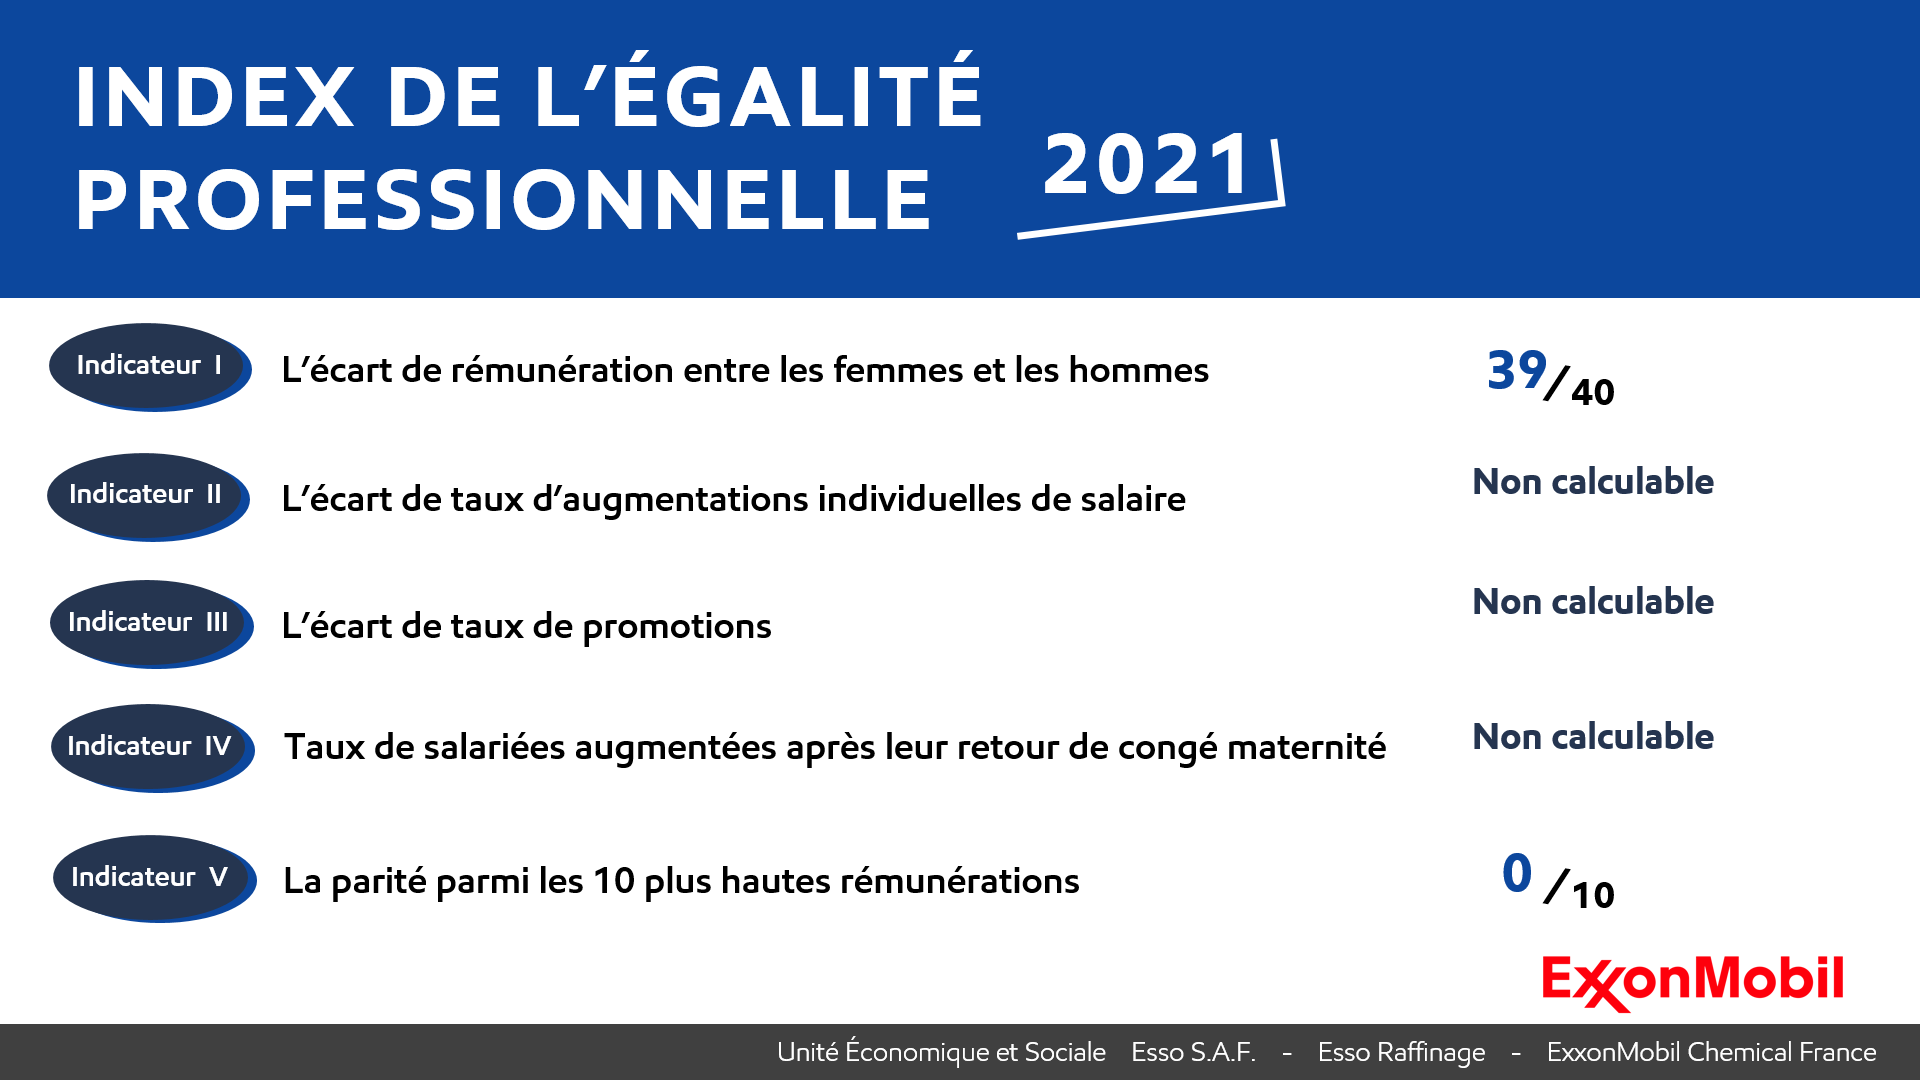 Index de l'égalite professionnelle femmes-hommes 2021 pour les sociétés du groupe ExxonMobil en France